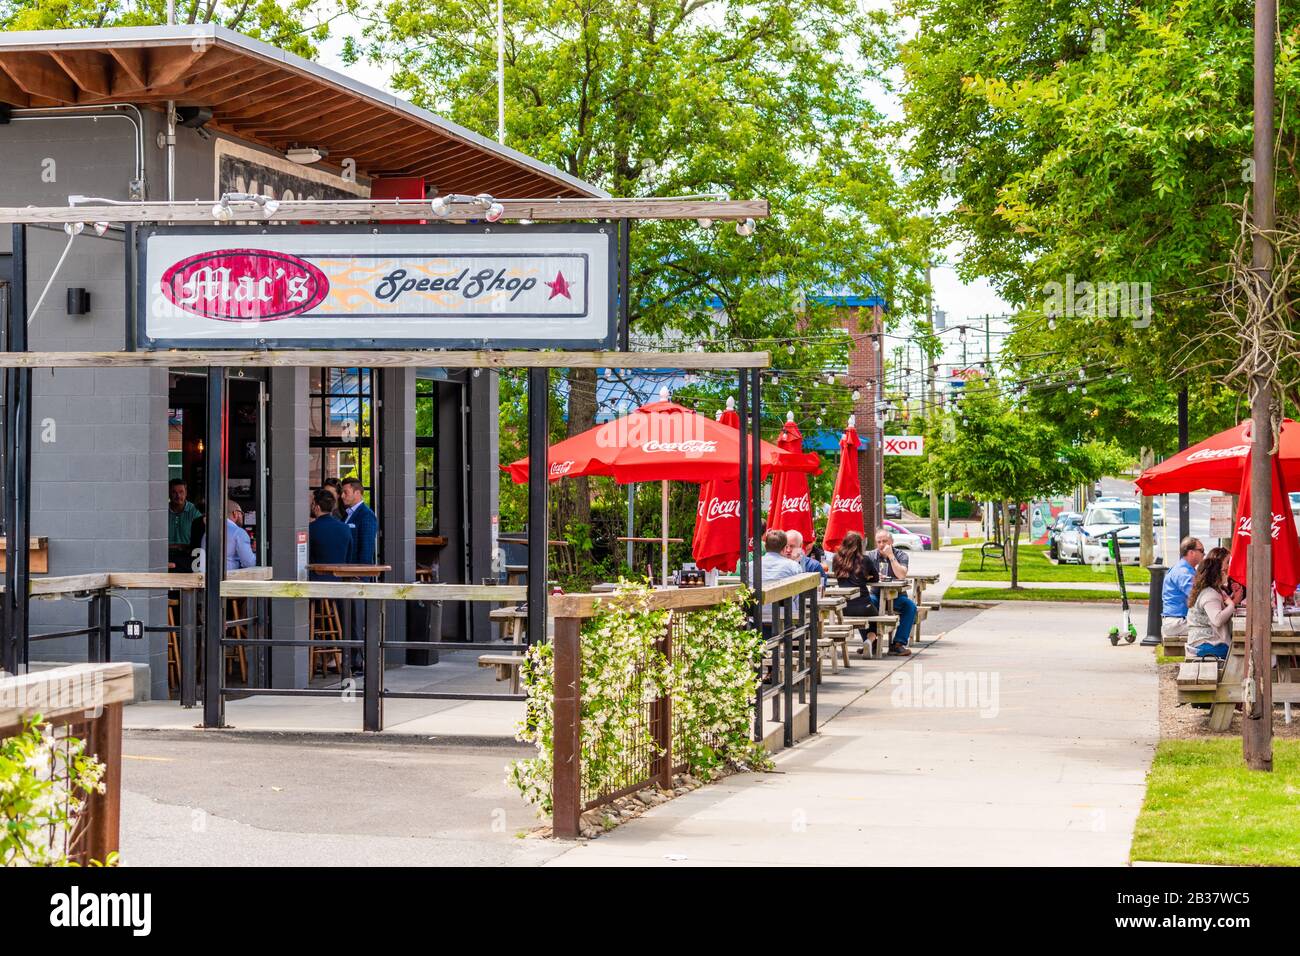 Charlotte, NC/USA - 14. Mai 2019: Horizontale Außenaufnahme der Mac's Speed Shop Bar und des Grills auf dem South Blvd. Mit Marken-/Logo-Schildern. Stockfoto